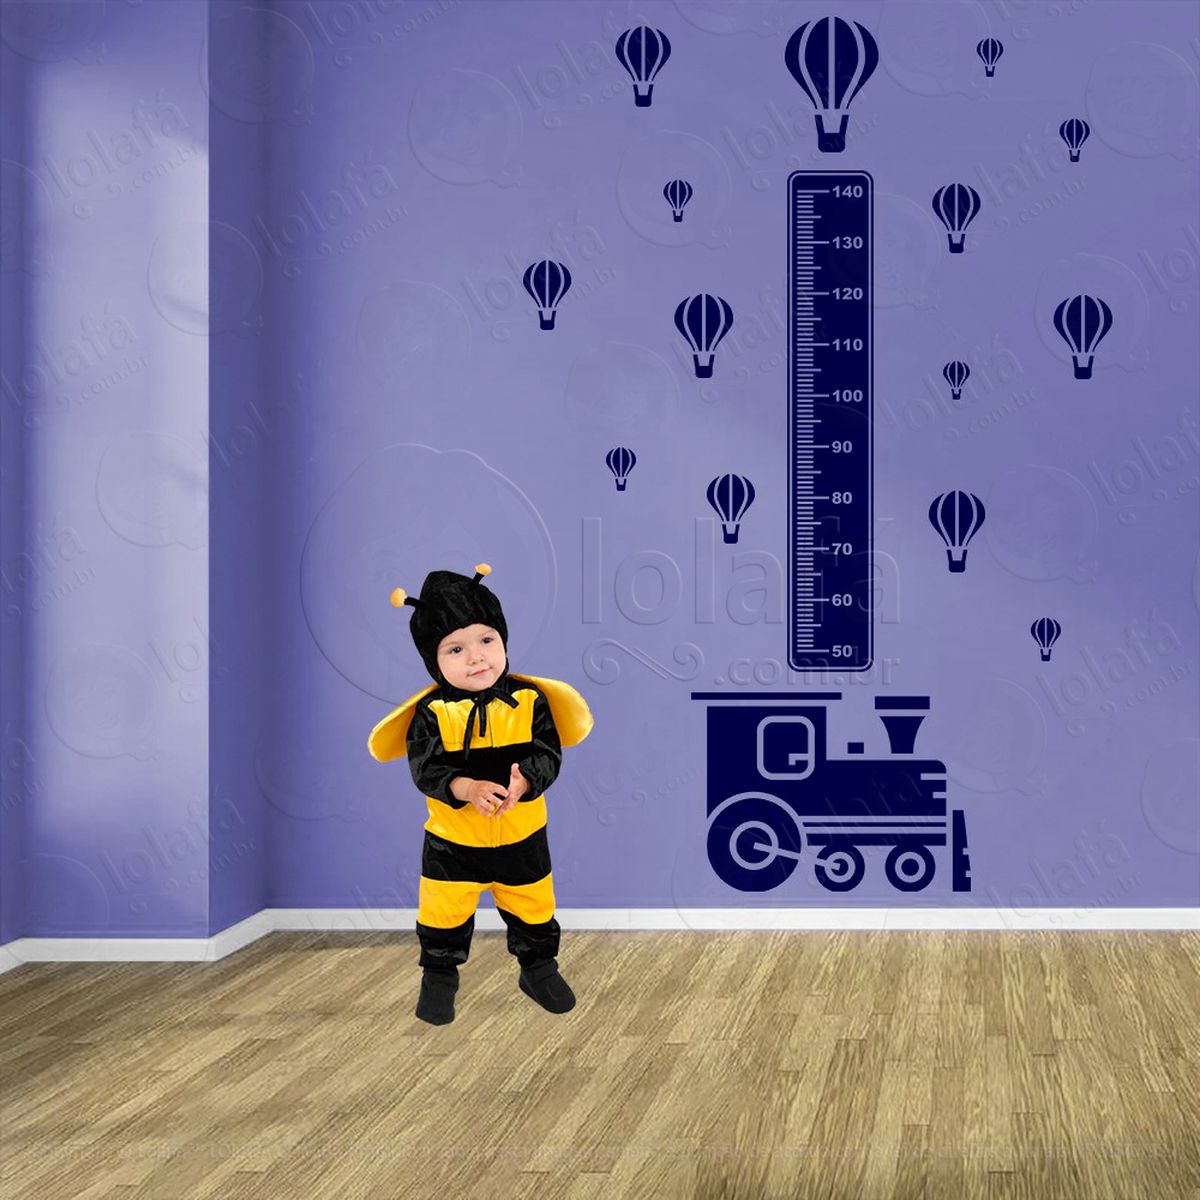 trêm e balões adesivo régua de crescimento infantil, medidor de altura para quarto, porta e parede - mod:1493